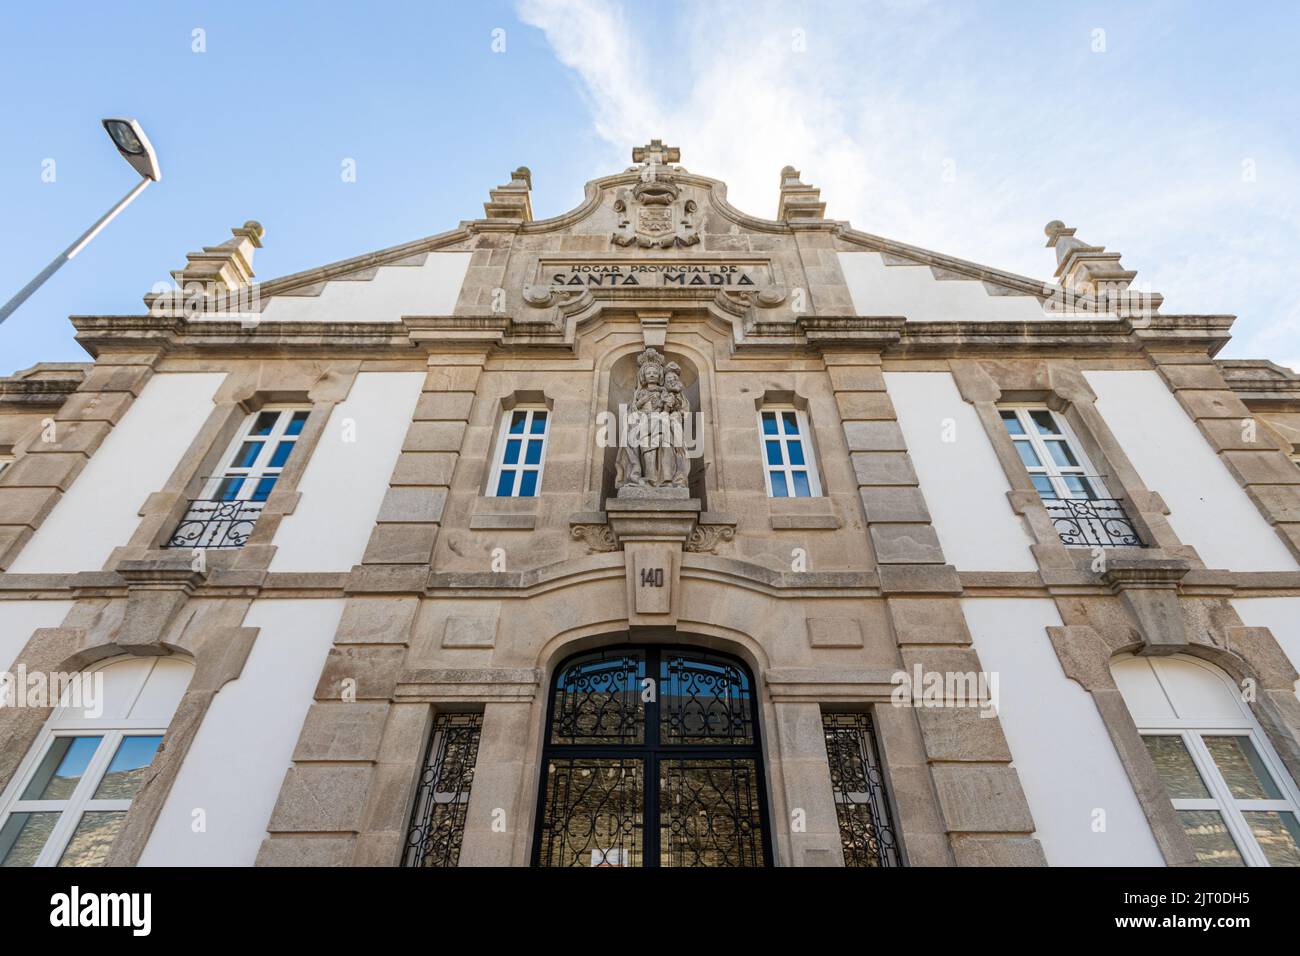 Lugo, Spain. The Hogar Provincial de Santa Maria (Saint Mary Provincial Home), a religious building Stock Photo